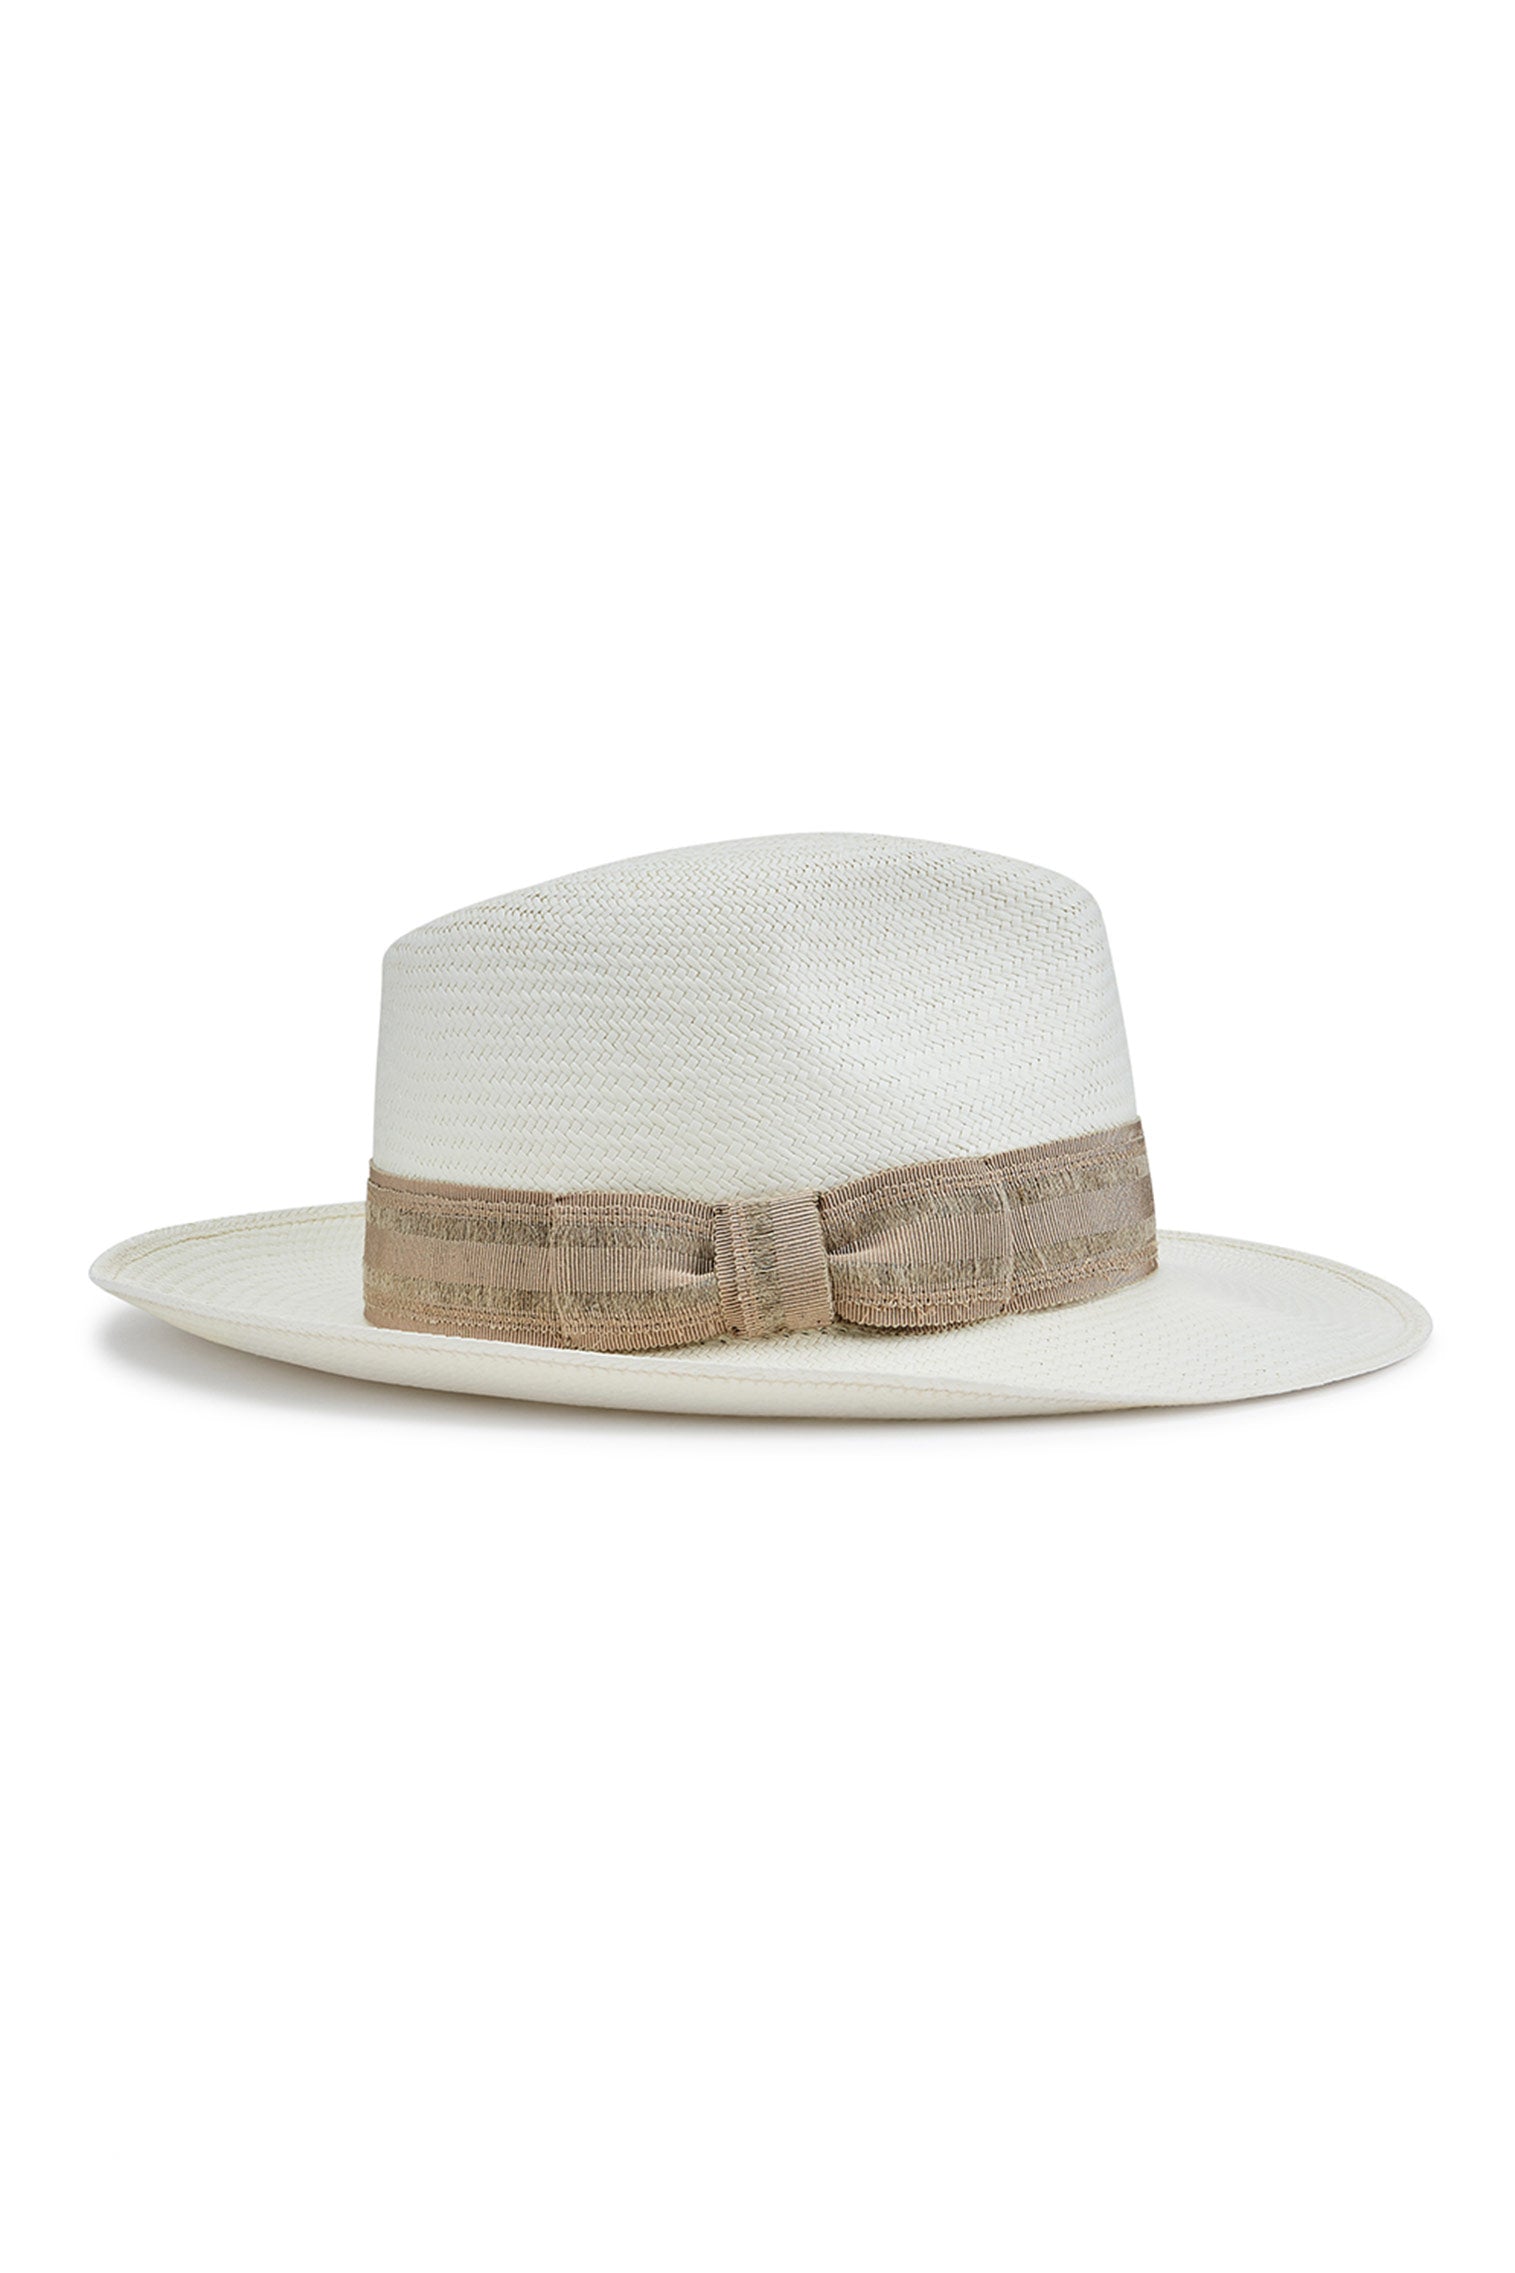 Berwick Panama Hat - Women’s Hats - Lock & Co. Hatters London UK